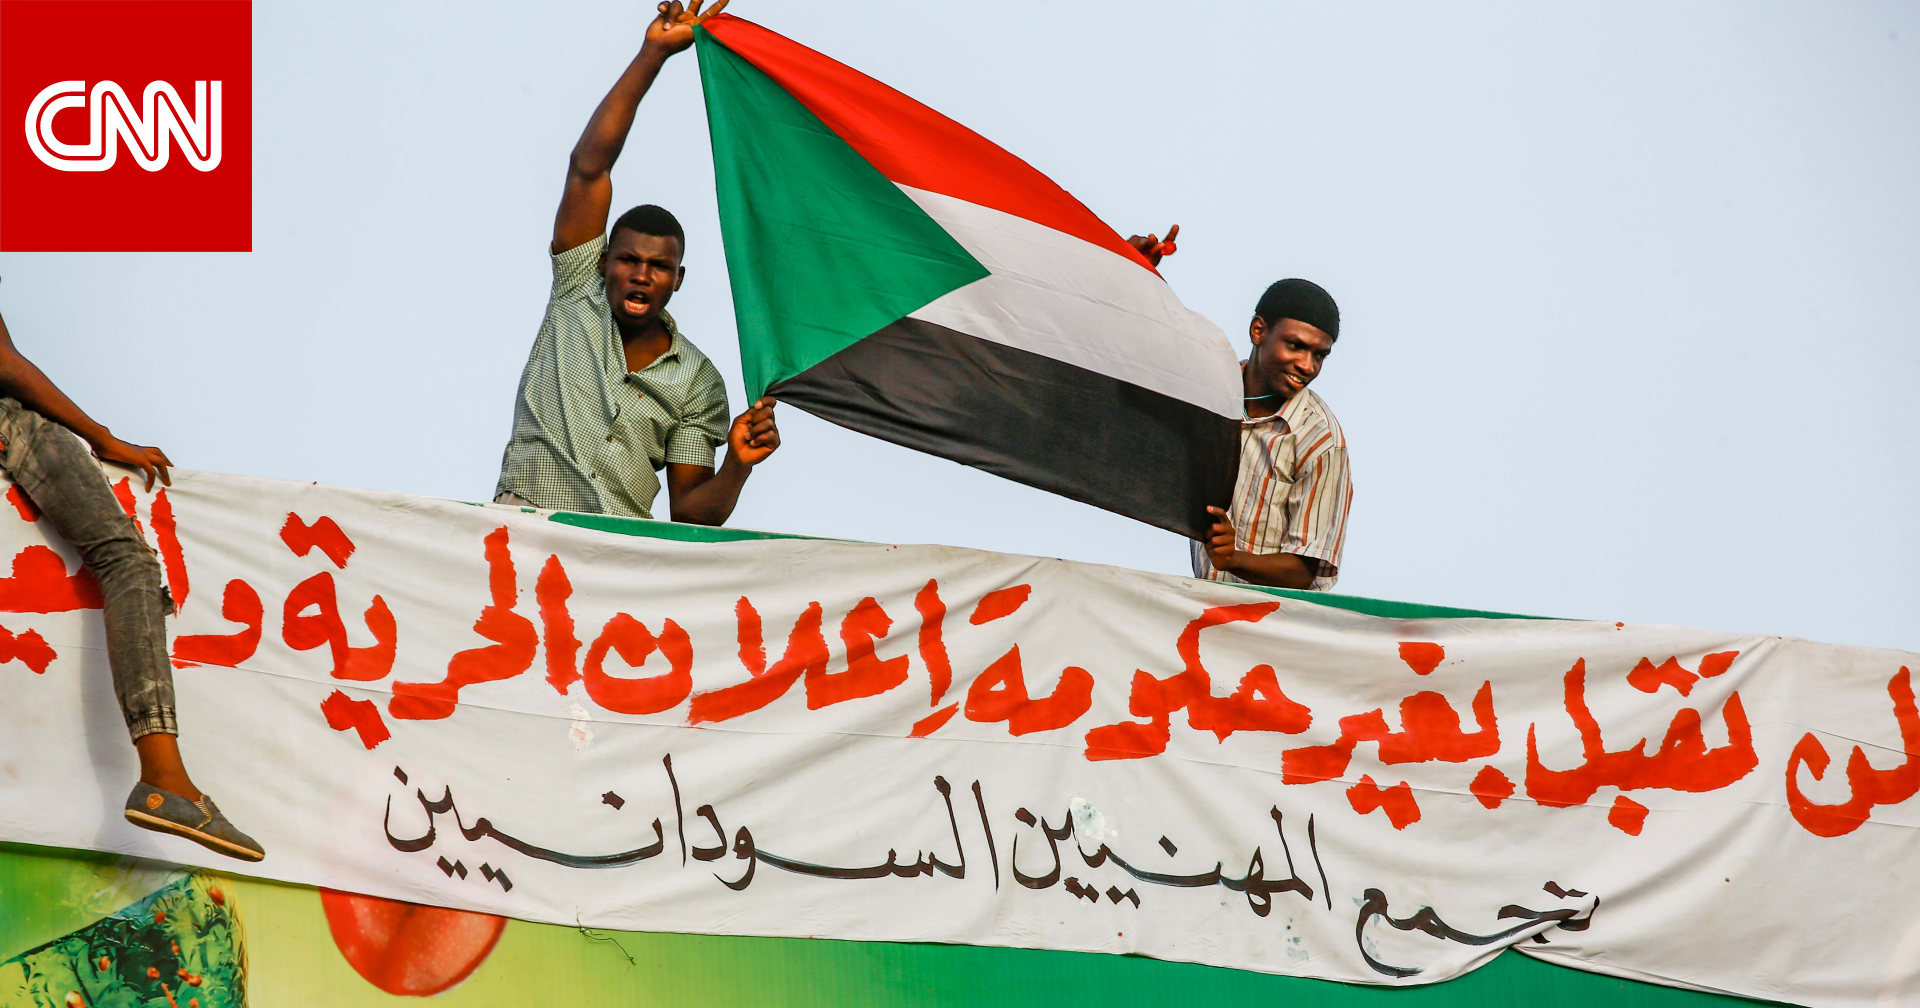 الإخوان المسلمين في السودان ينتقدون  أخطاء  وقعت فيها  الحرية والتغيير  